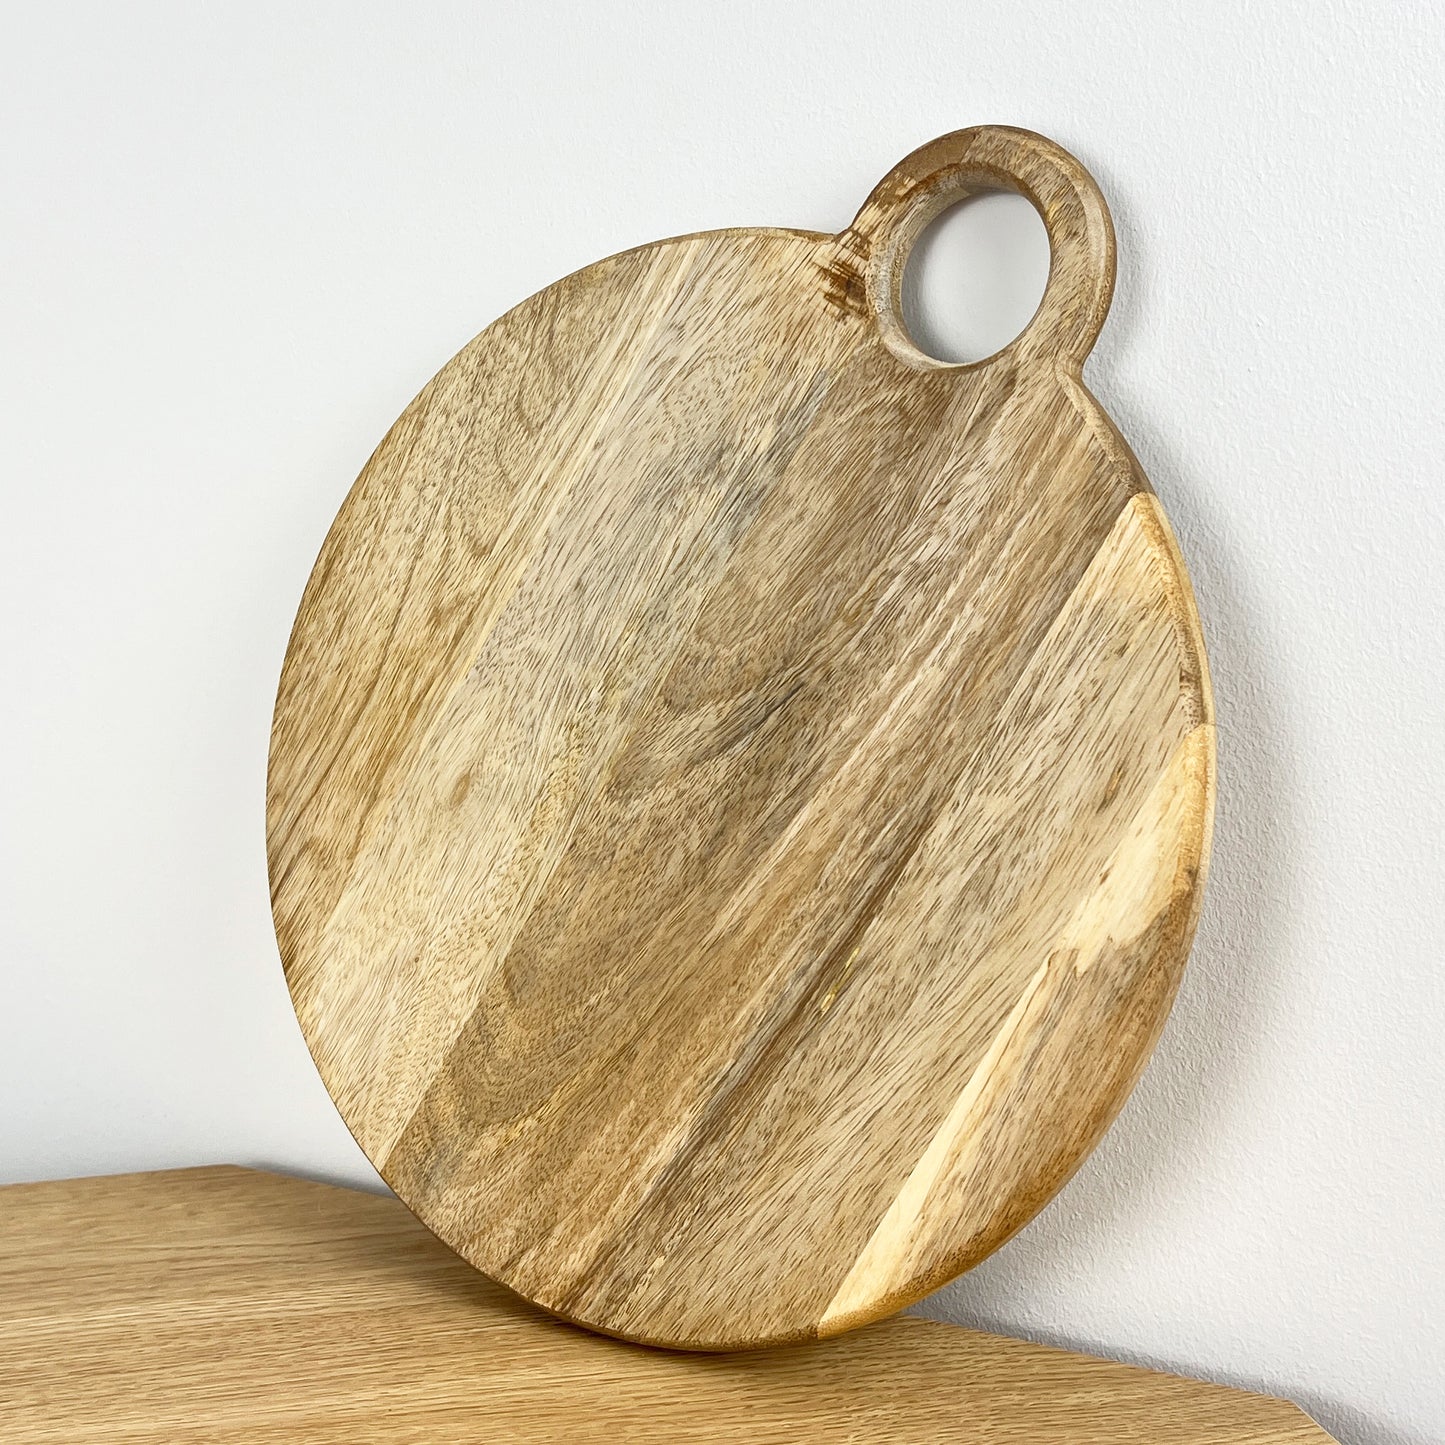 30cm Round Mango Wood Chopping Board